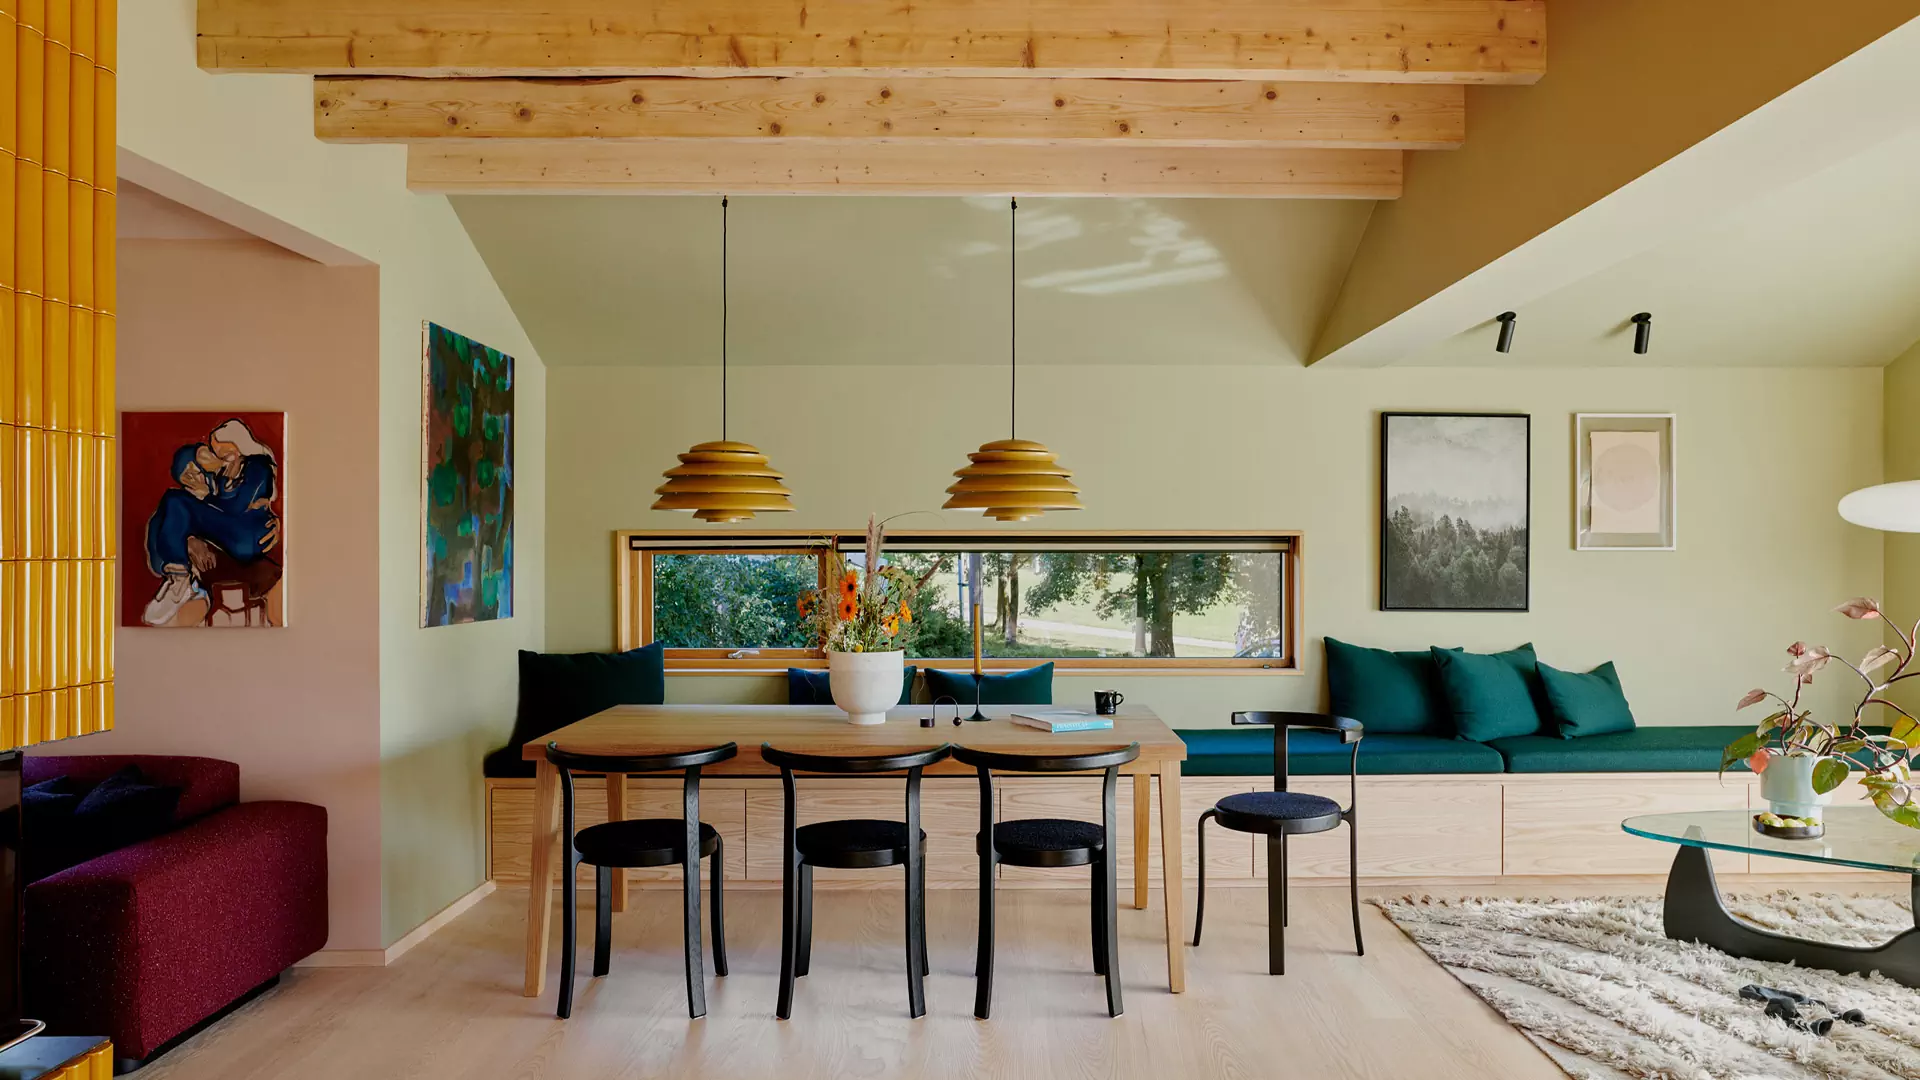 Трехэтажный коттедж с яблоневым садом и желтым камином — проект студии Familien Kvistad